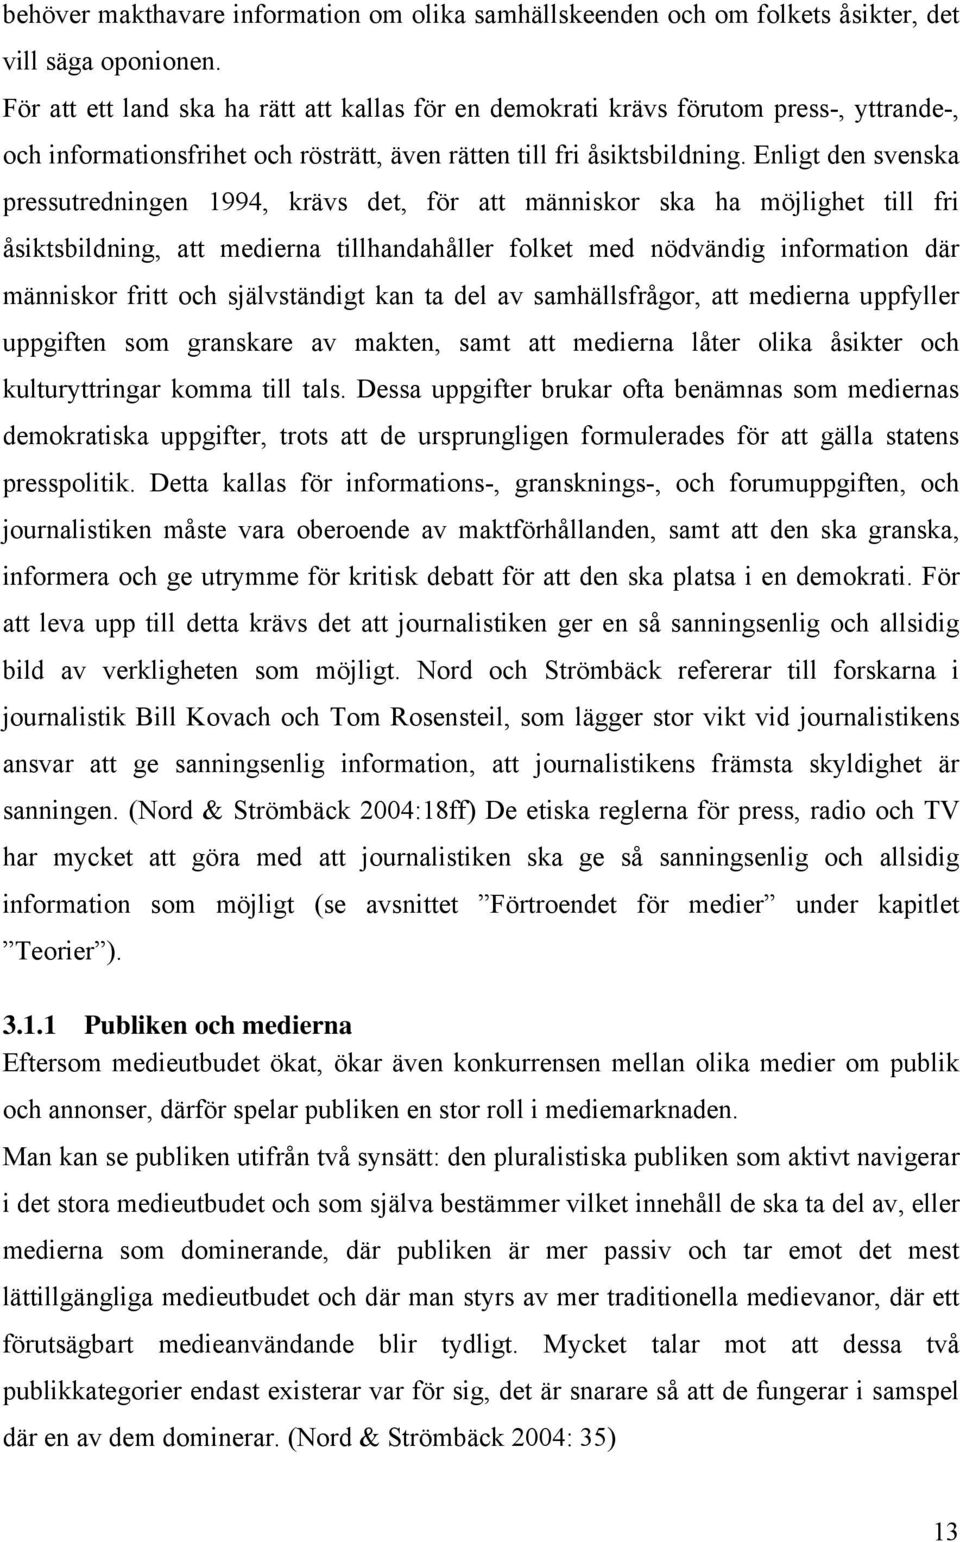 Enligt den svenska pressutredningen 1994, krävs det, för att människor ska ha möjlighet till fri åsiktsbildning, att medierna tillhandahåller folket med nödvändig information där människor fritt och